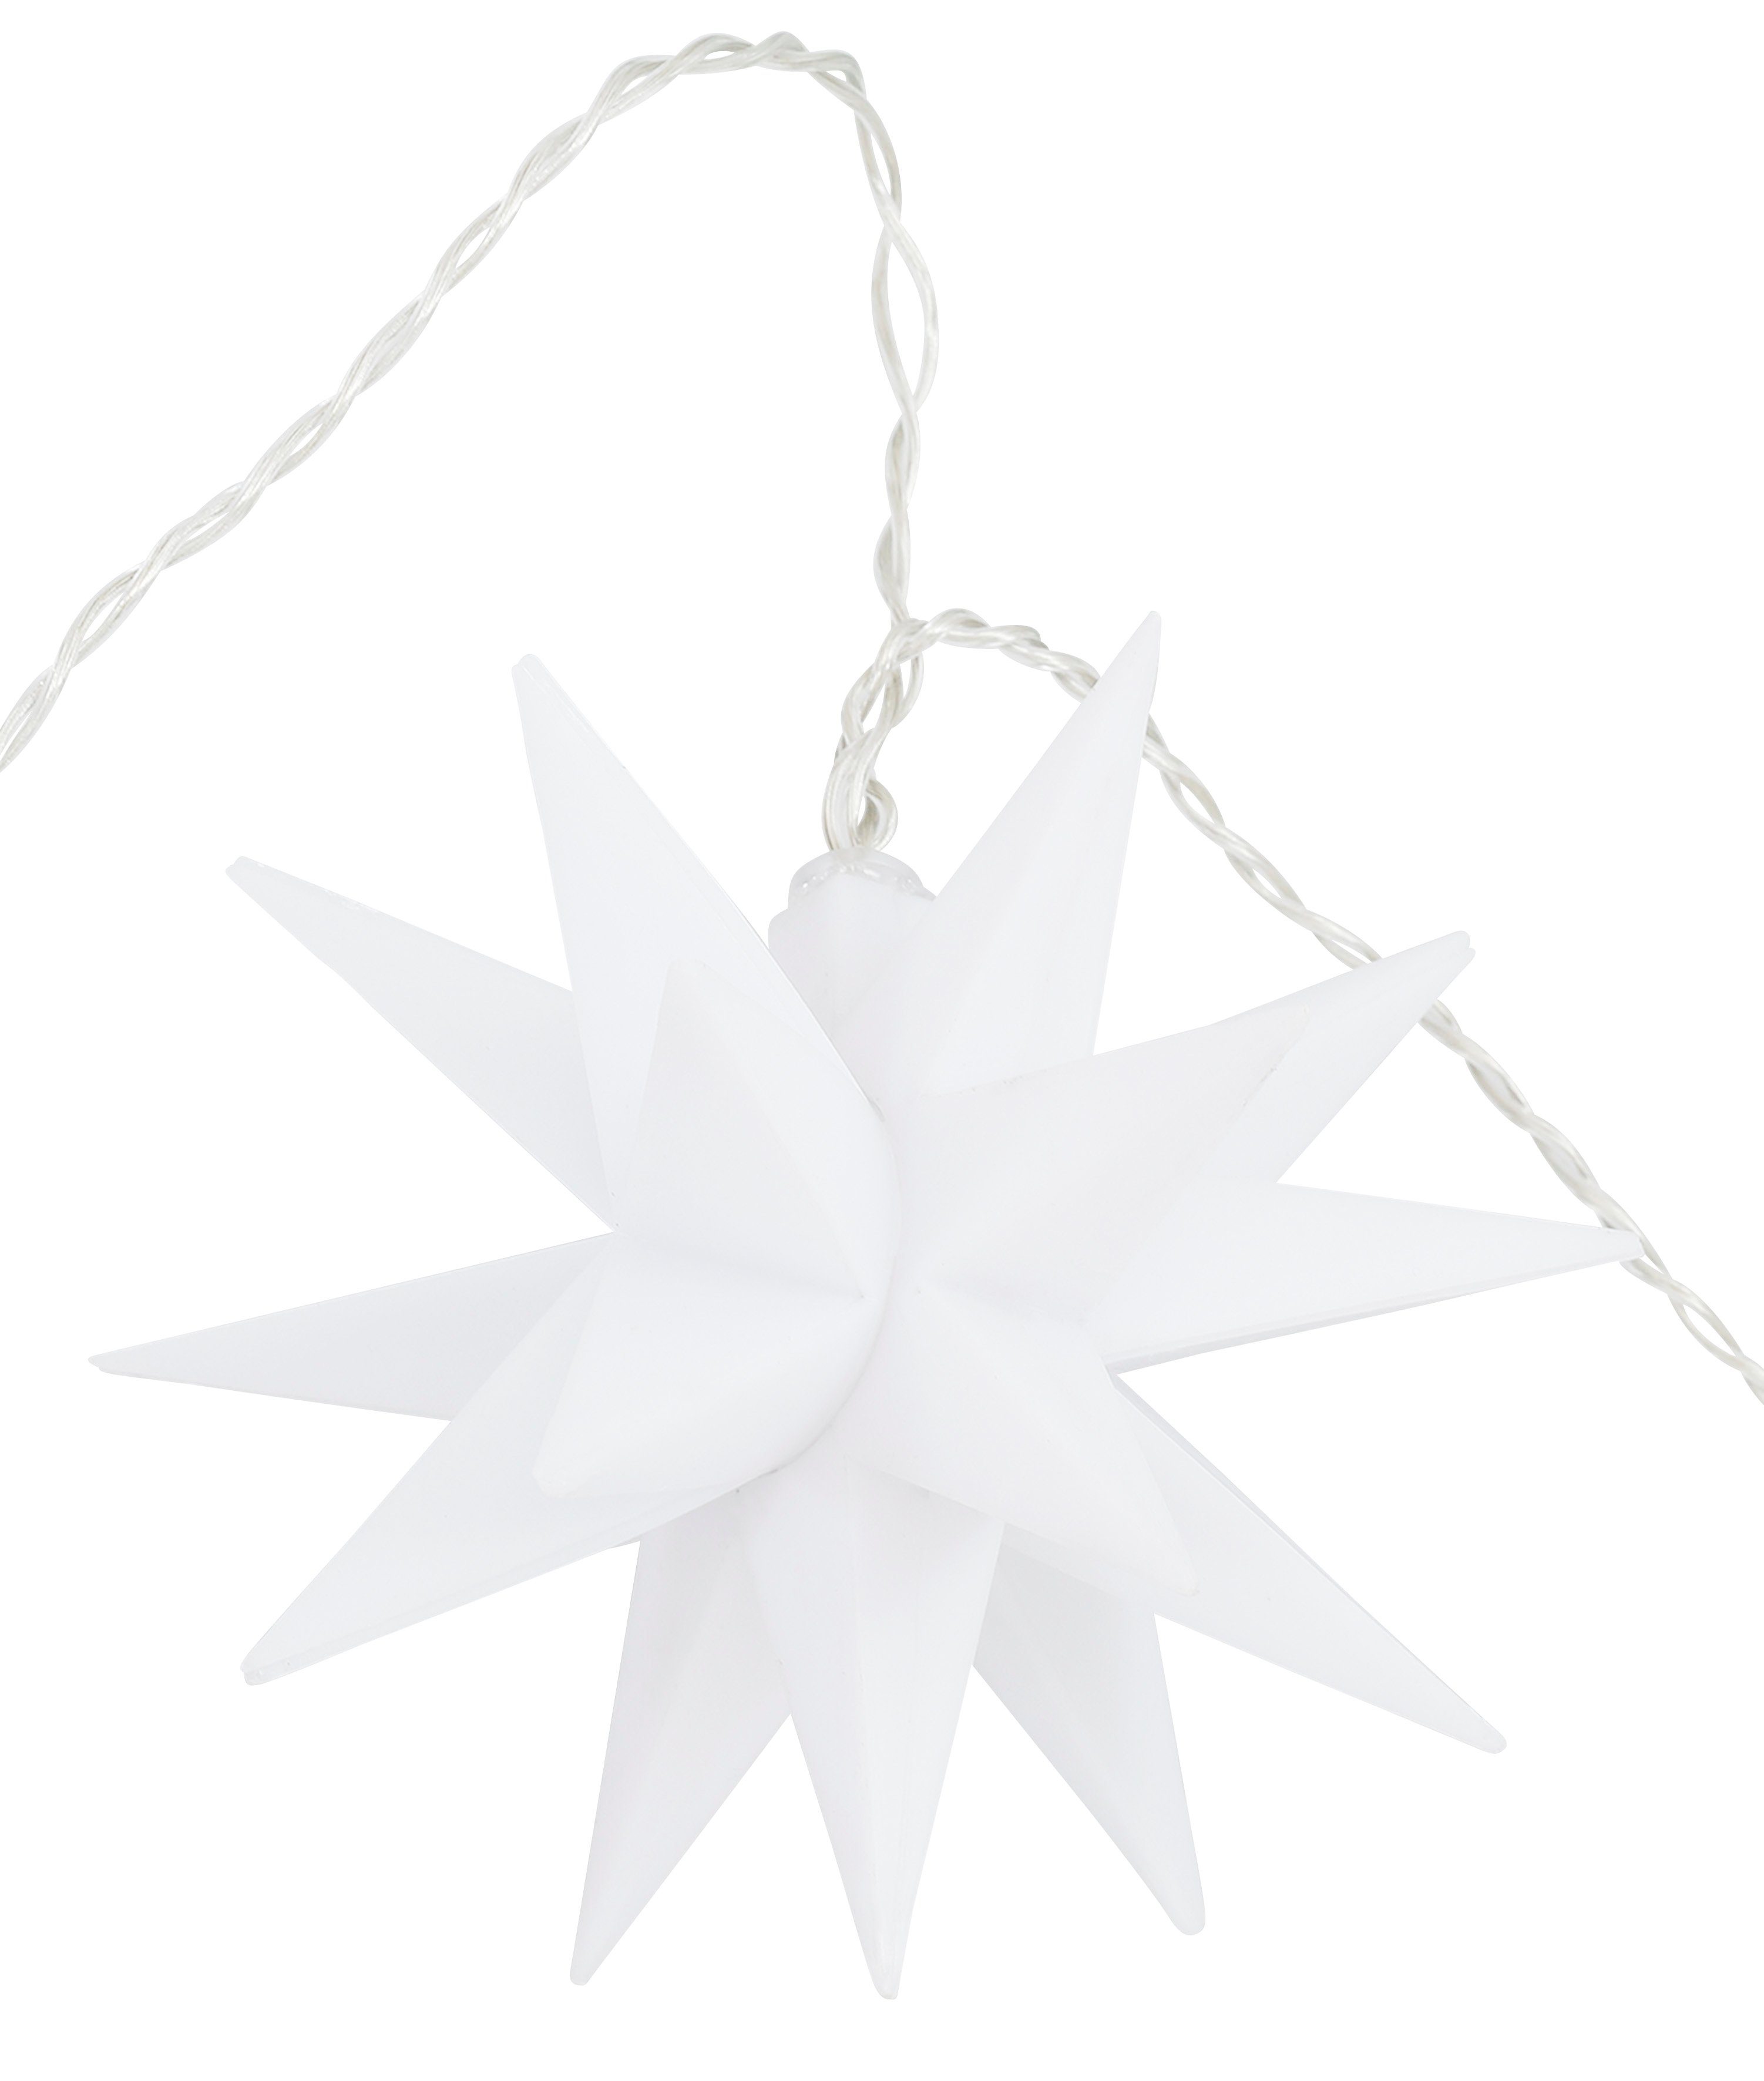 Sternen my aussen, inklusive cm, Weihnachtsdeko LED-Lichterkette transparent/weiß Ø mit ca. 12 Felia, Timer home 10